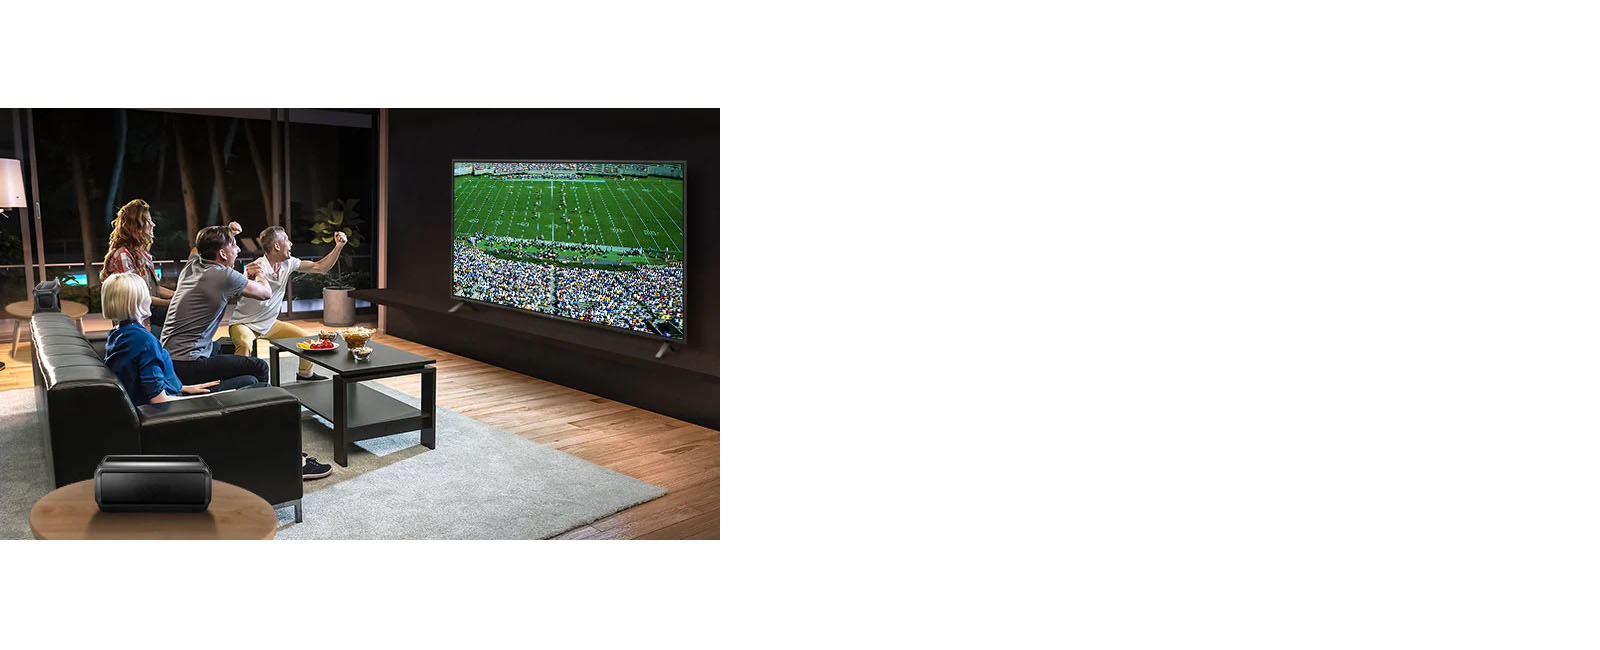 Personnes regardant un jeu de sport sur un téléviseur dans un salon avec des haut-parleurs arrière Bluetooth.